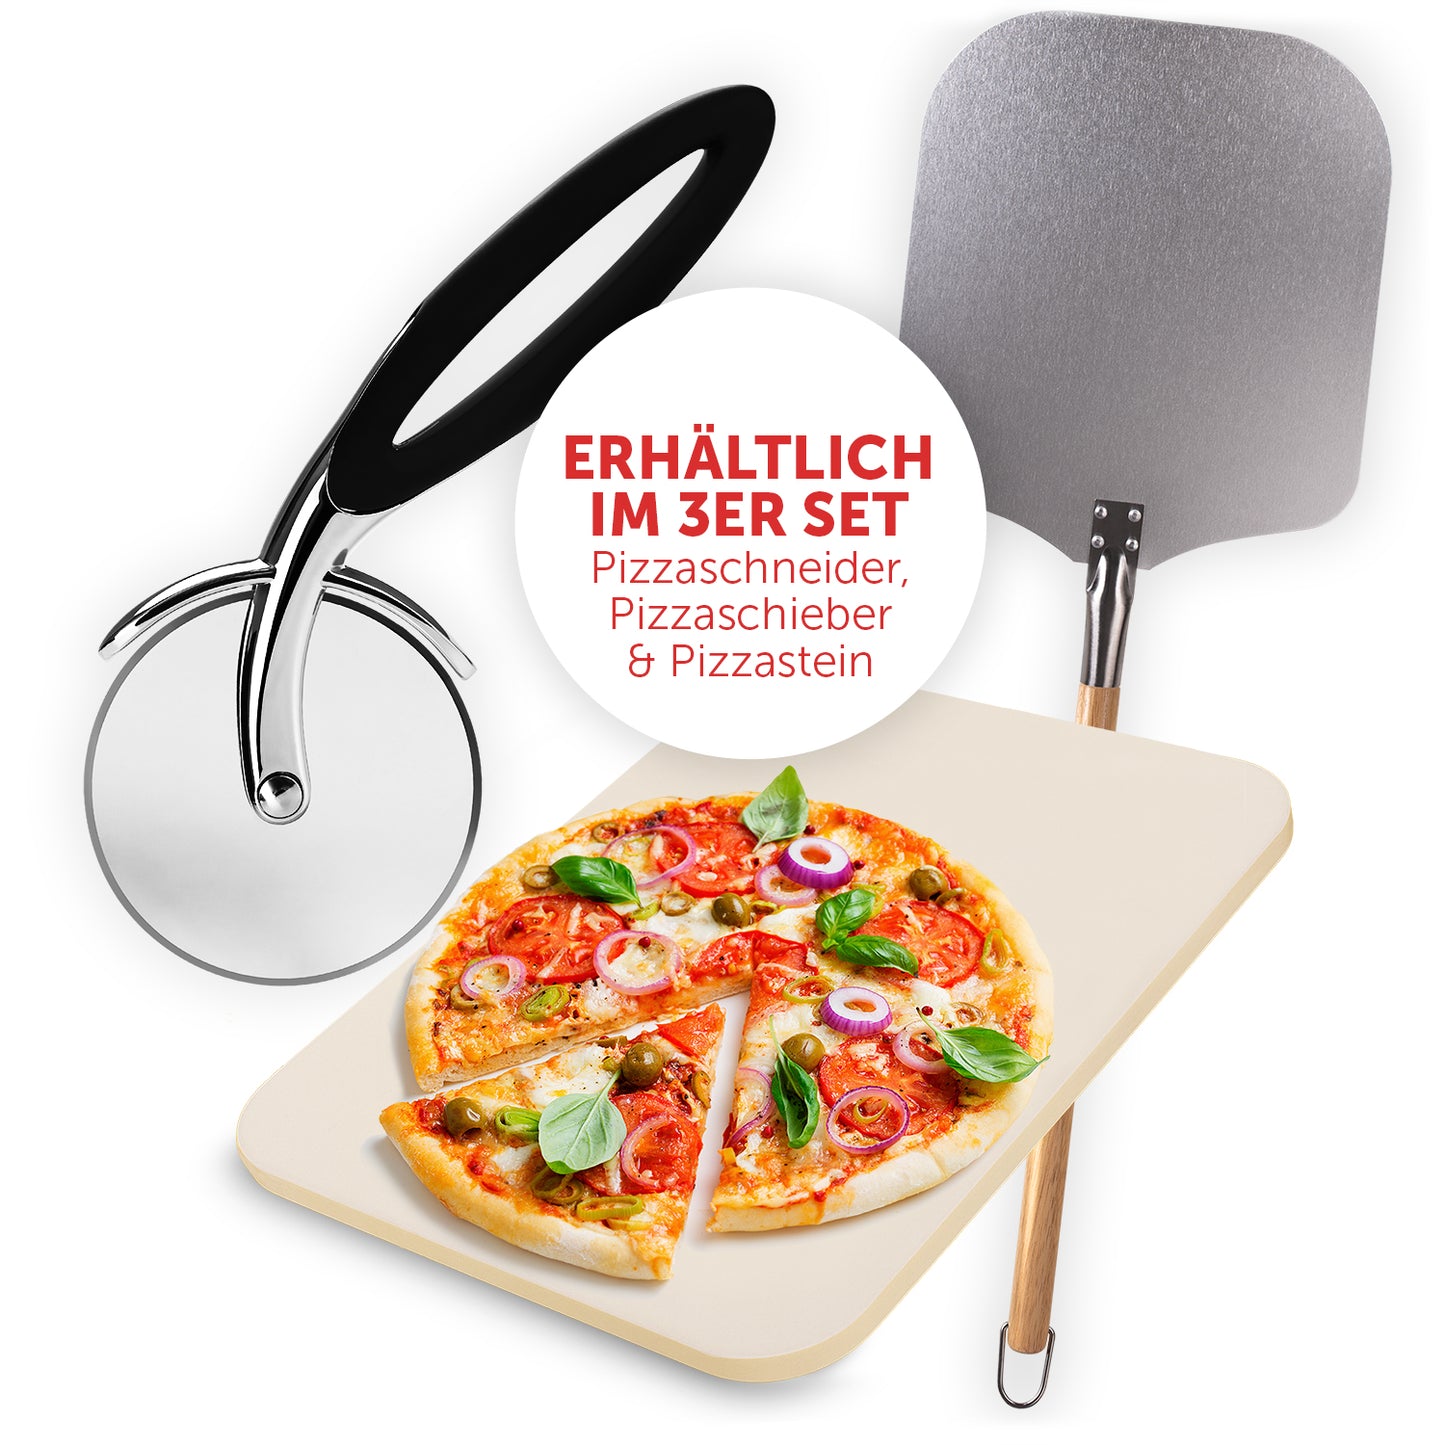 Zusehen ist ein Edelstahl Pizzaroller mit Schwarzem Griff sowie einer Pizzastein in beige mit einer Pizza drauf. Im Hintergrund ist zudem eine Pizzaschaufel zu sehen.